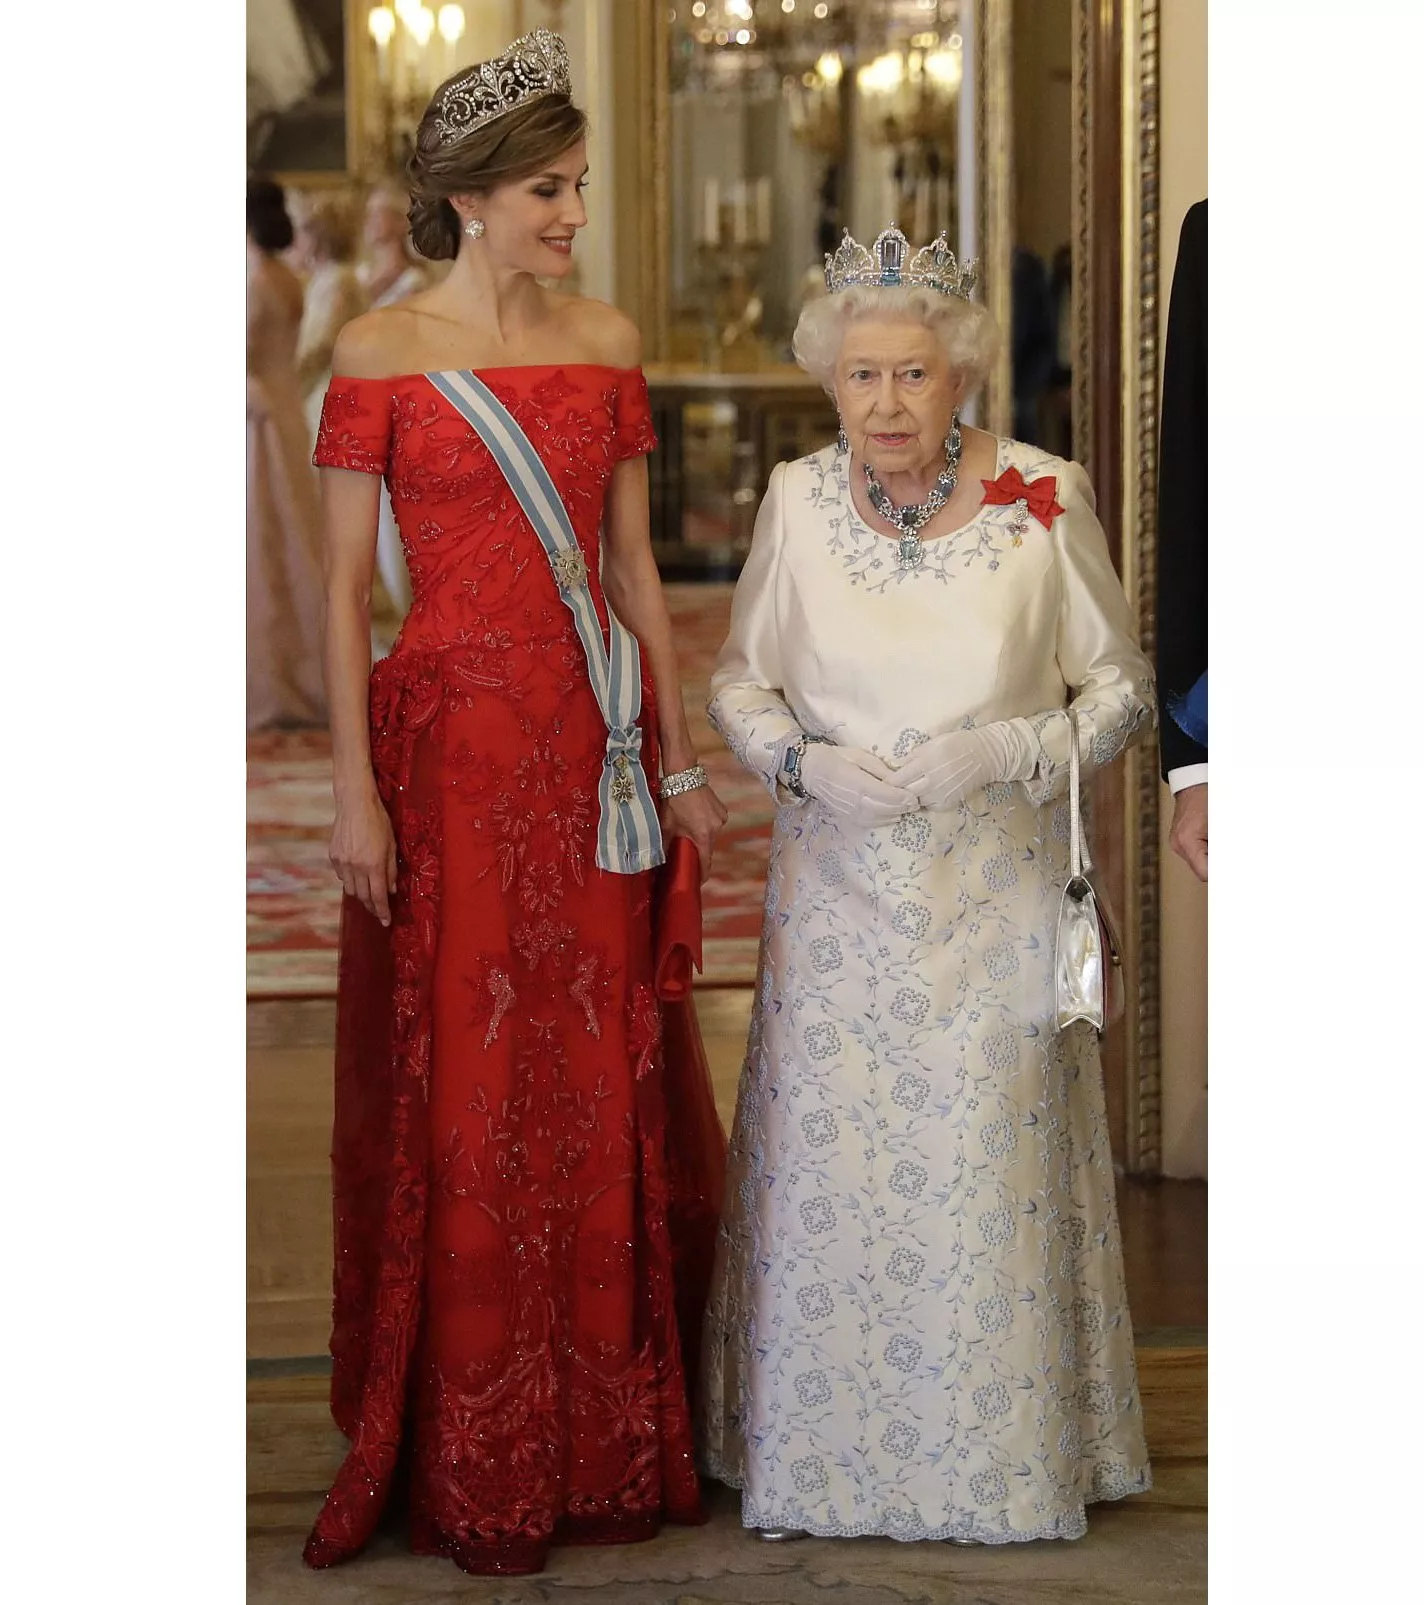 الملكة ليتيزيا في 3 إطلالات أكثر من رائعة خلال جولتها في بريطانيا